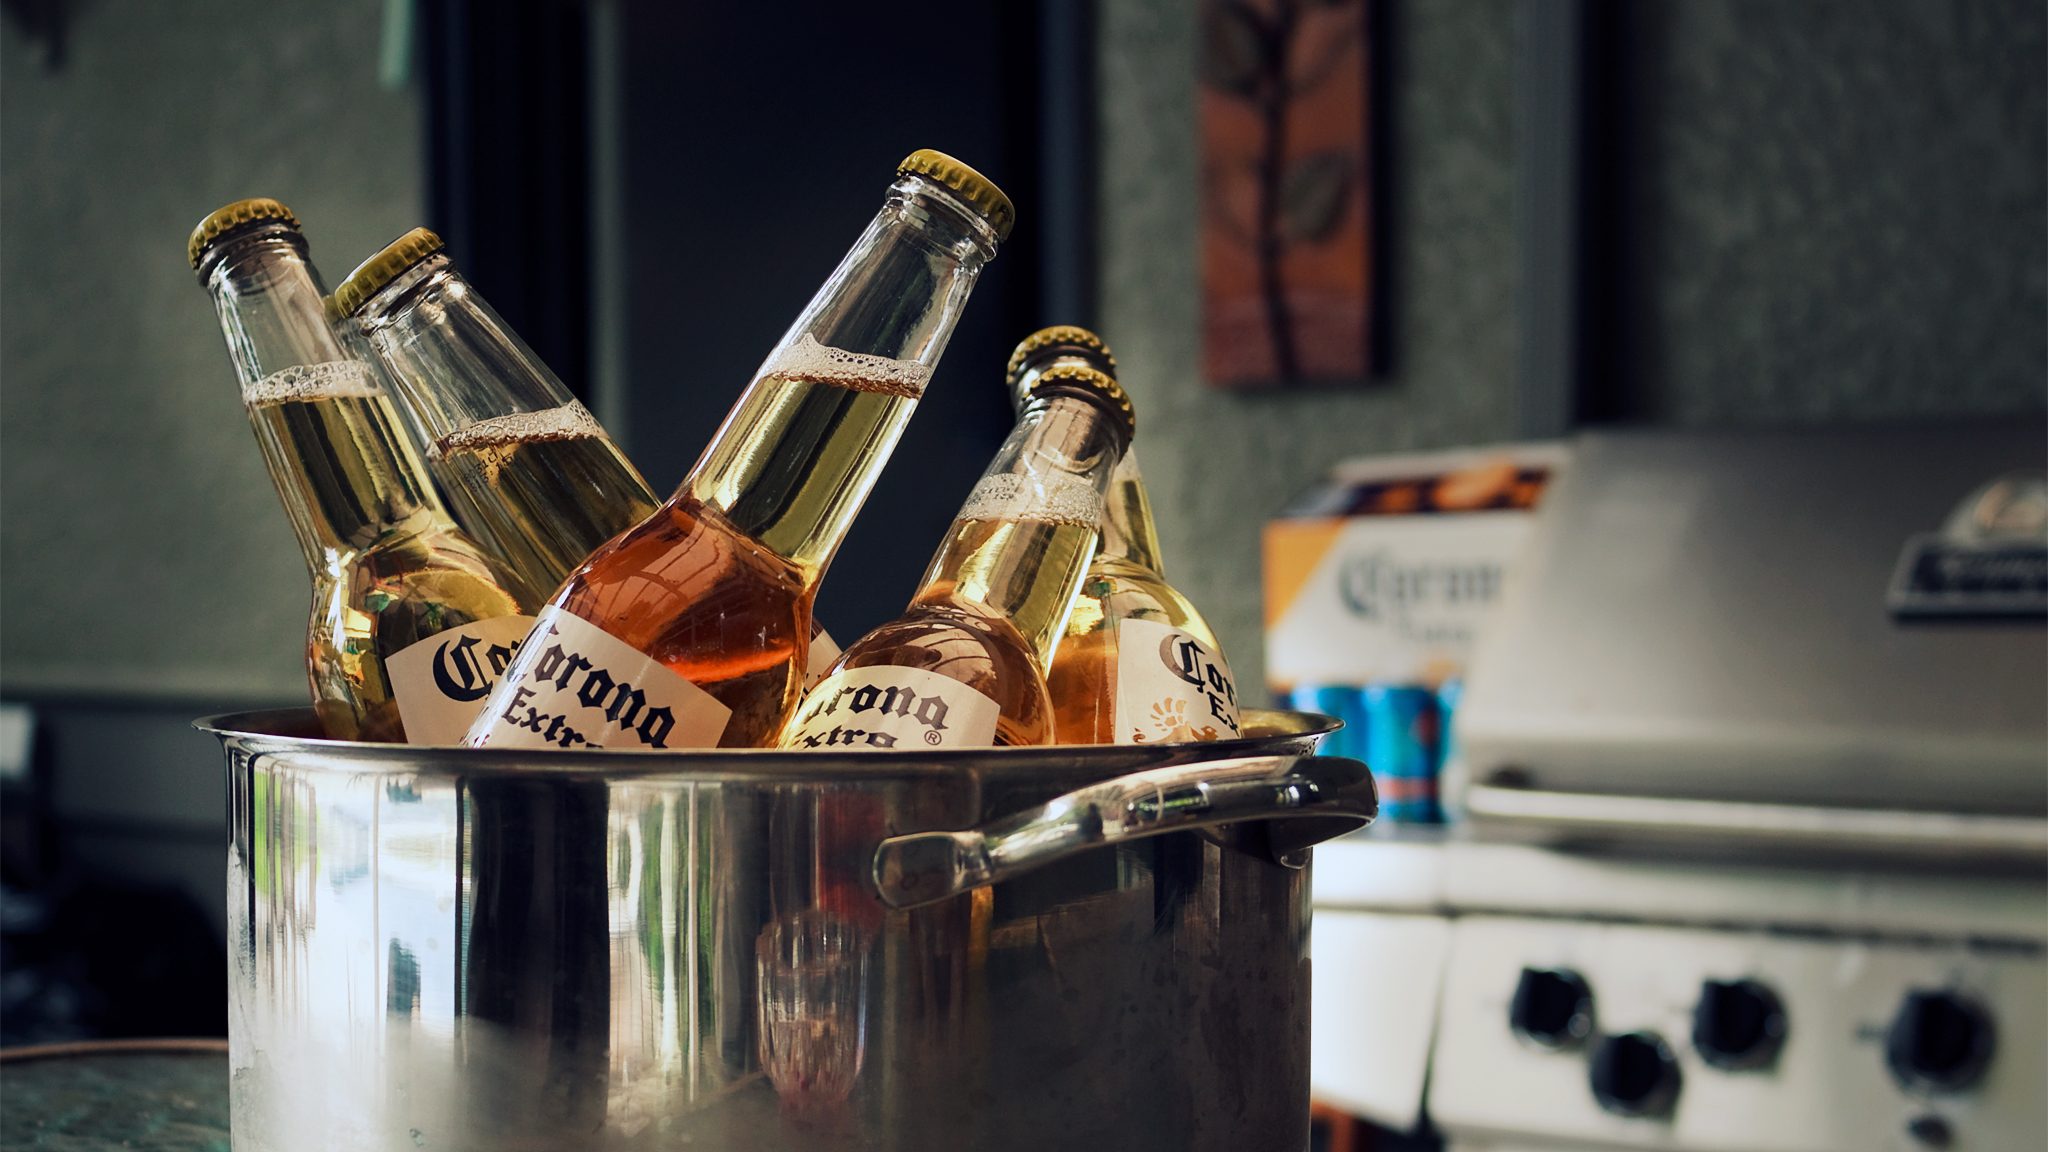 beers, Corona - desktop wallpaper